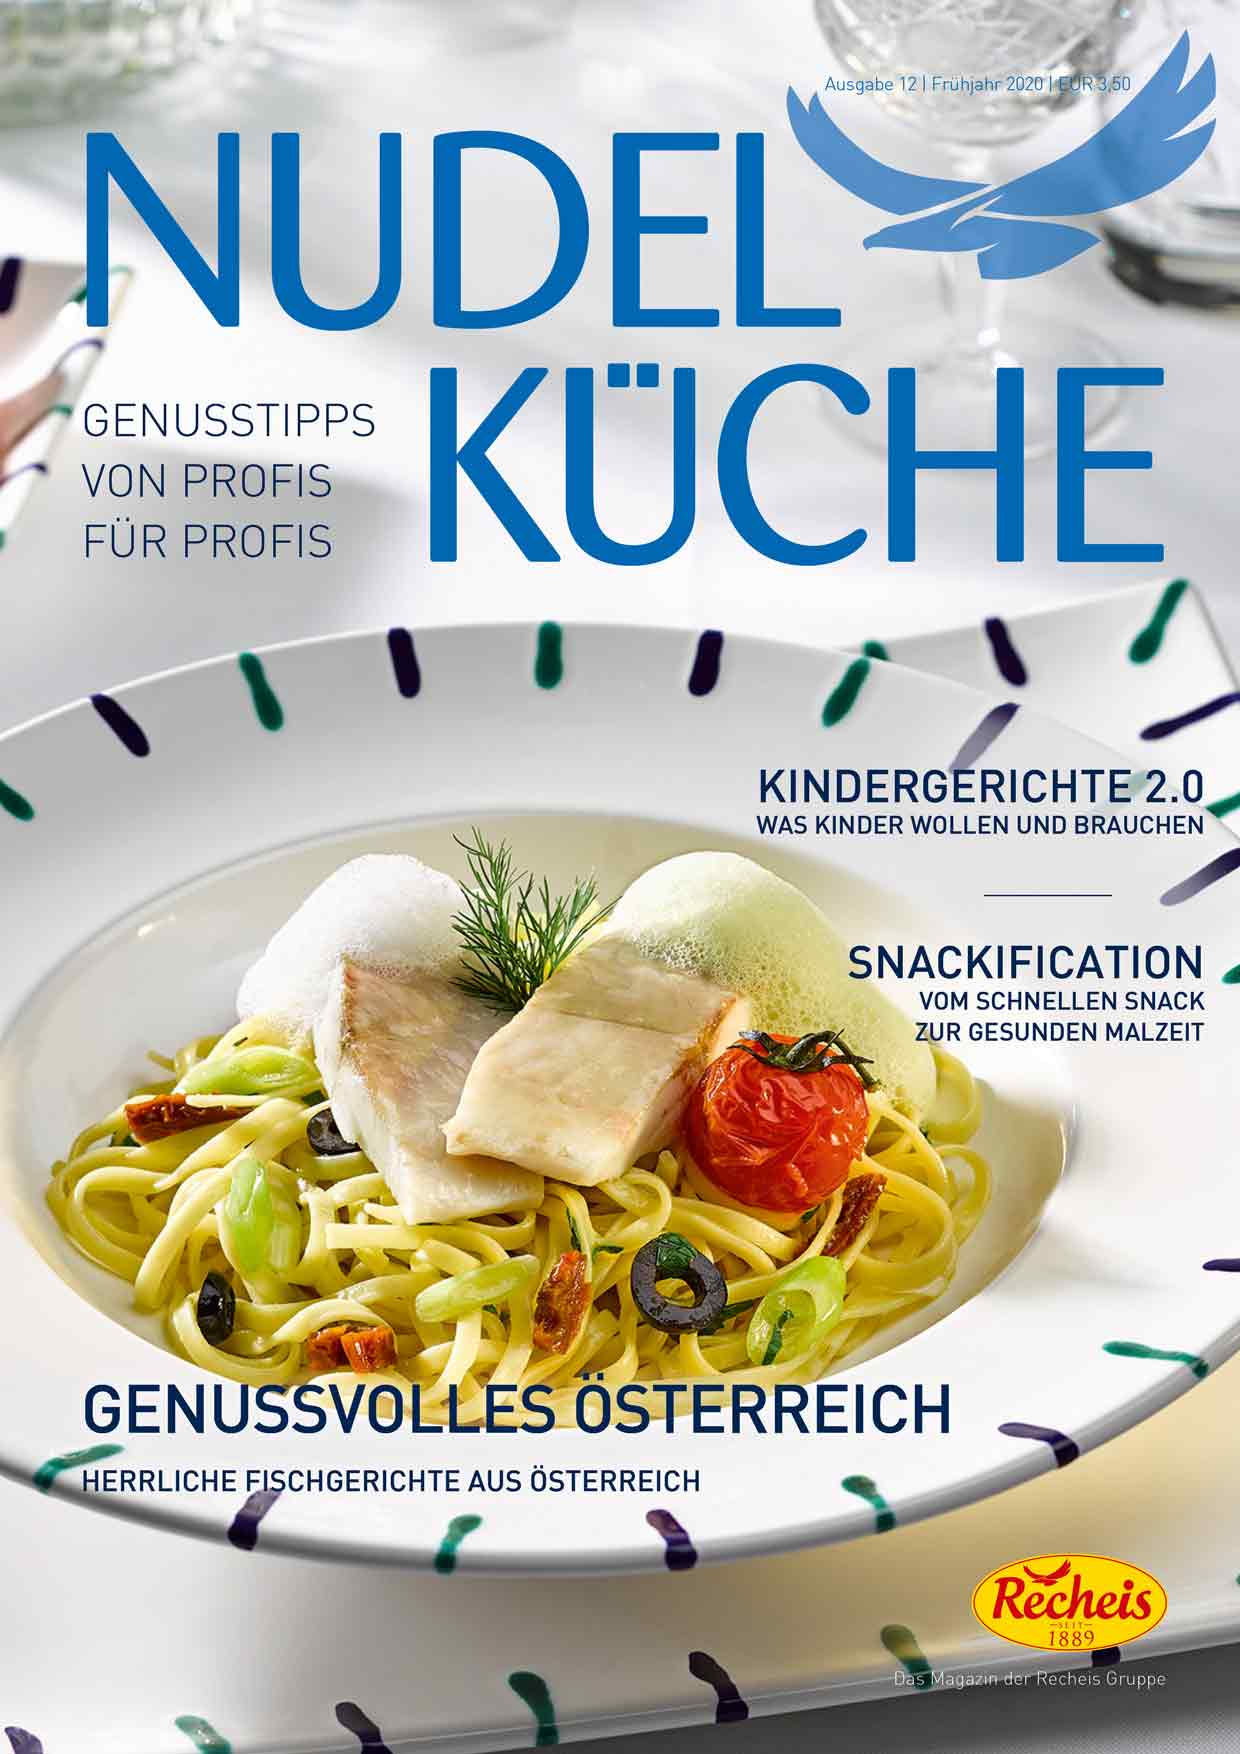 Nudelkueche-Ausgabe-12-Fruehjahr